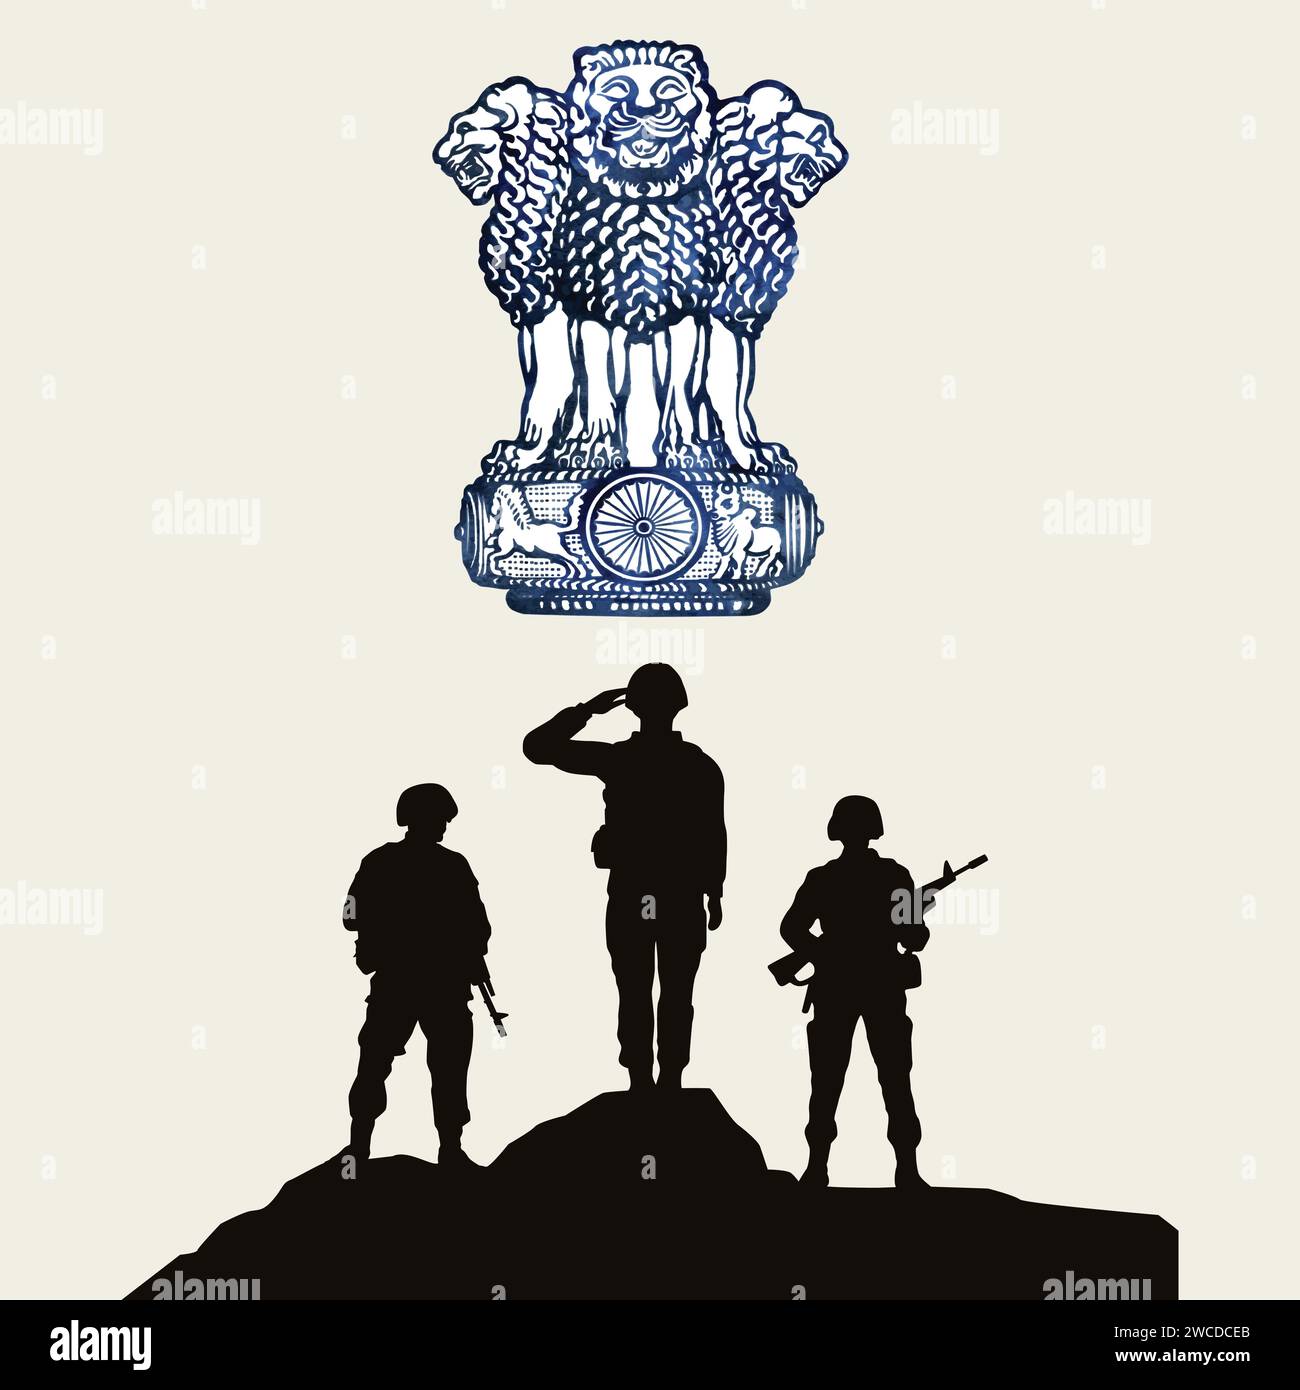 Tag Der Indischen Armee Mit Glückwunsch. Illustration des Armeemanns. Tag Der Indischen Armee Stock Vektor